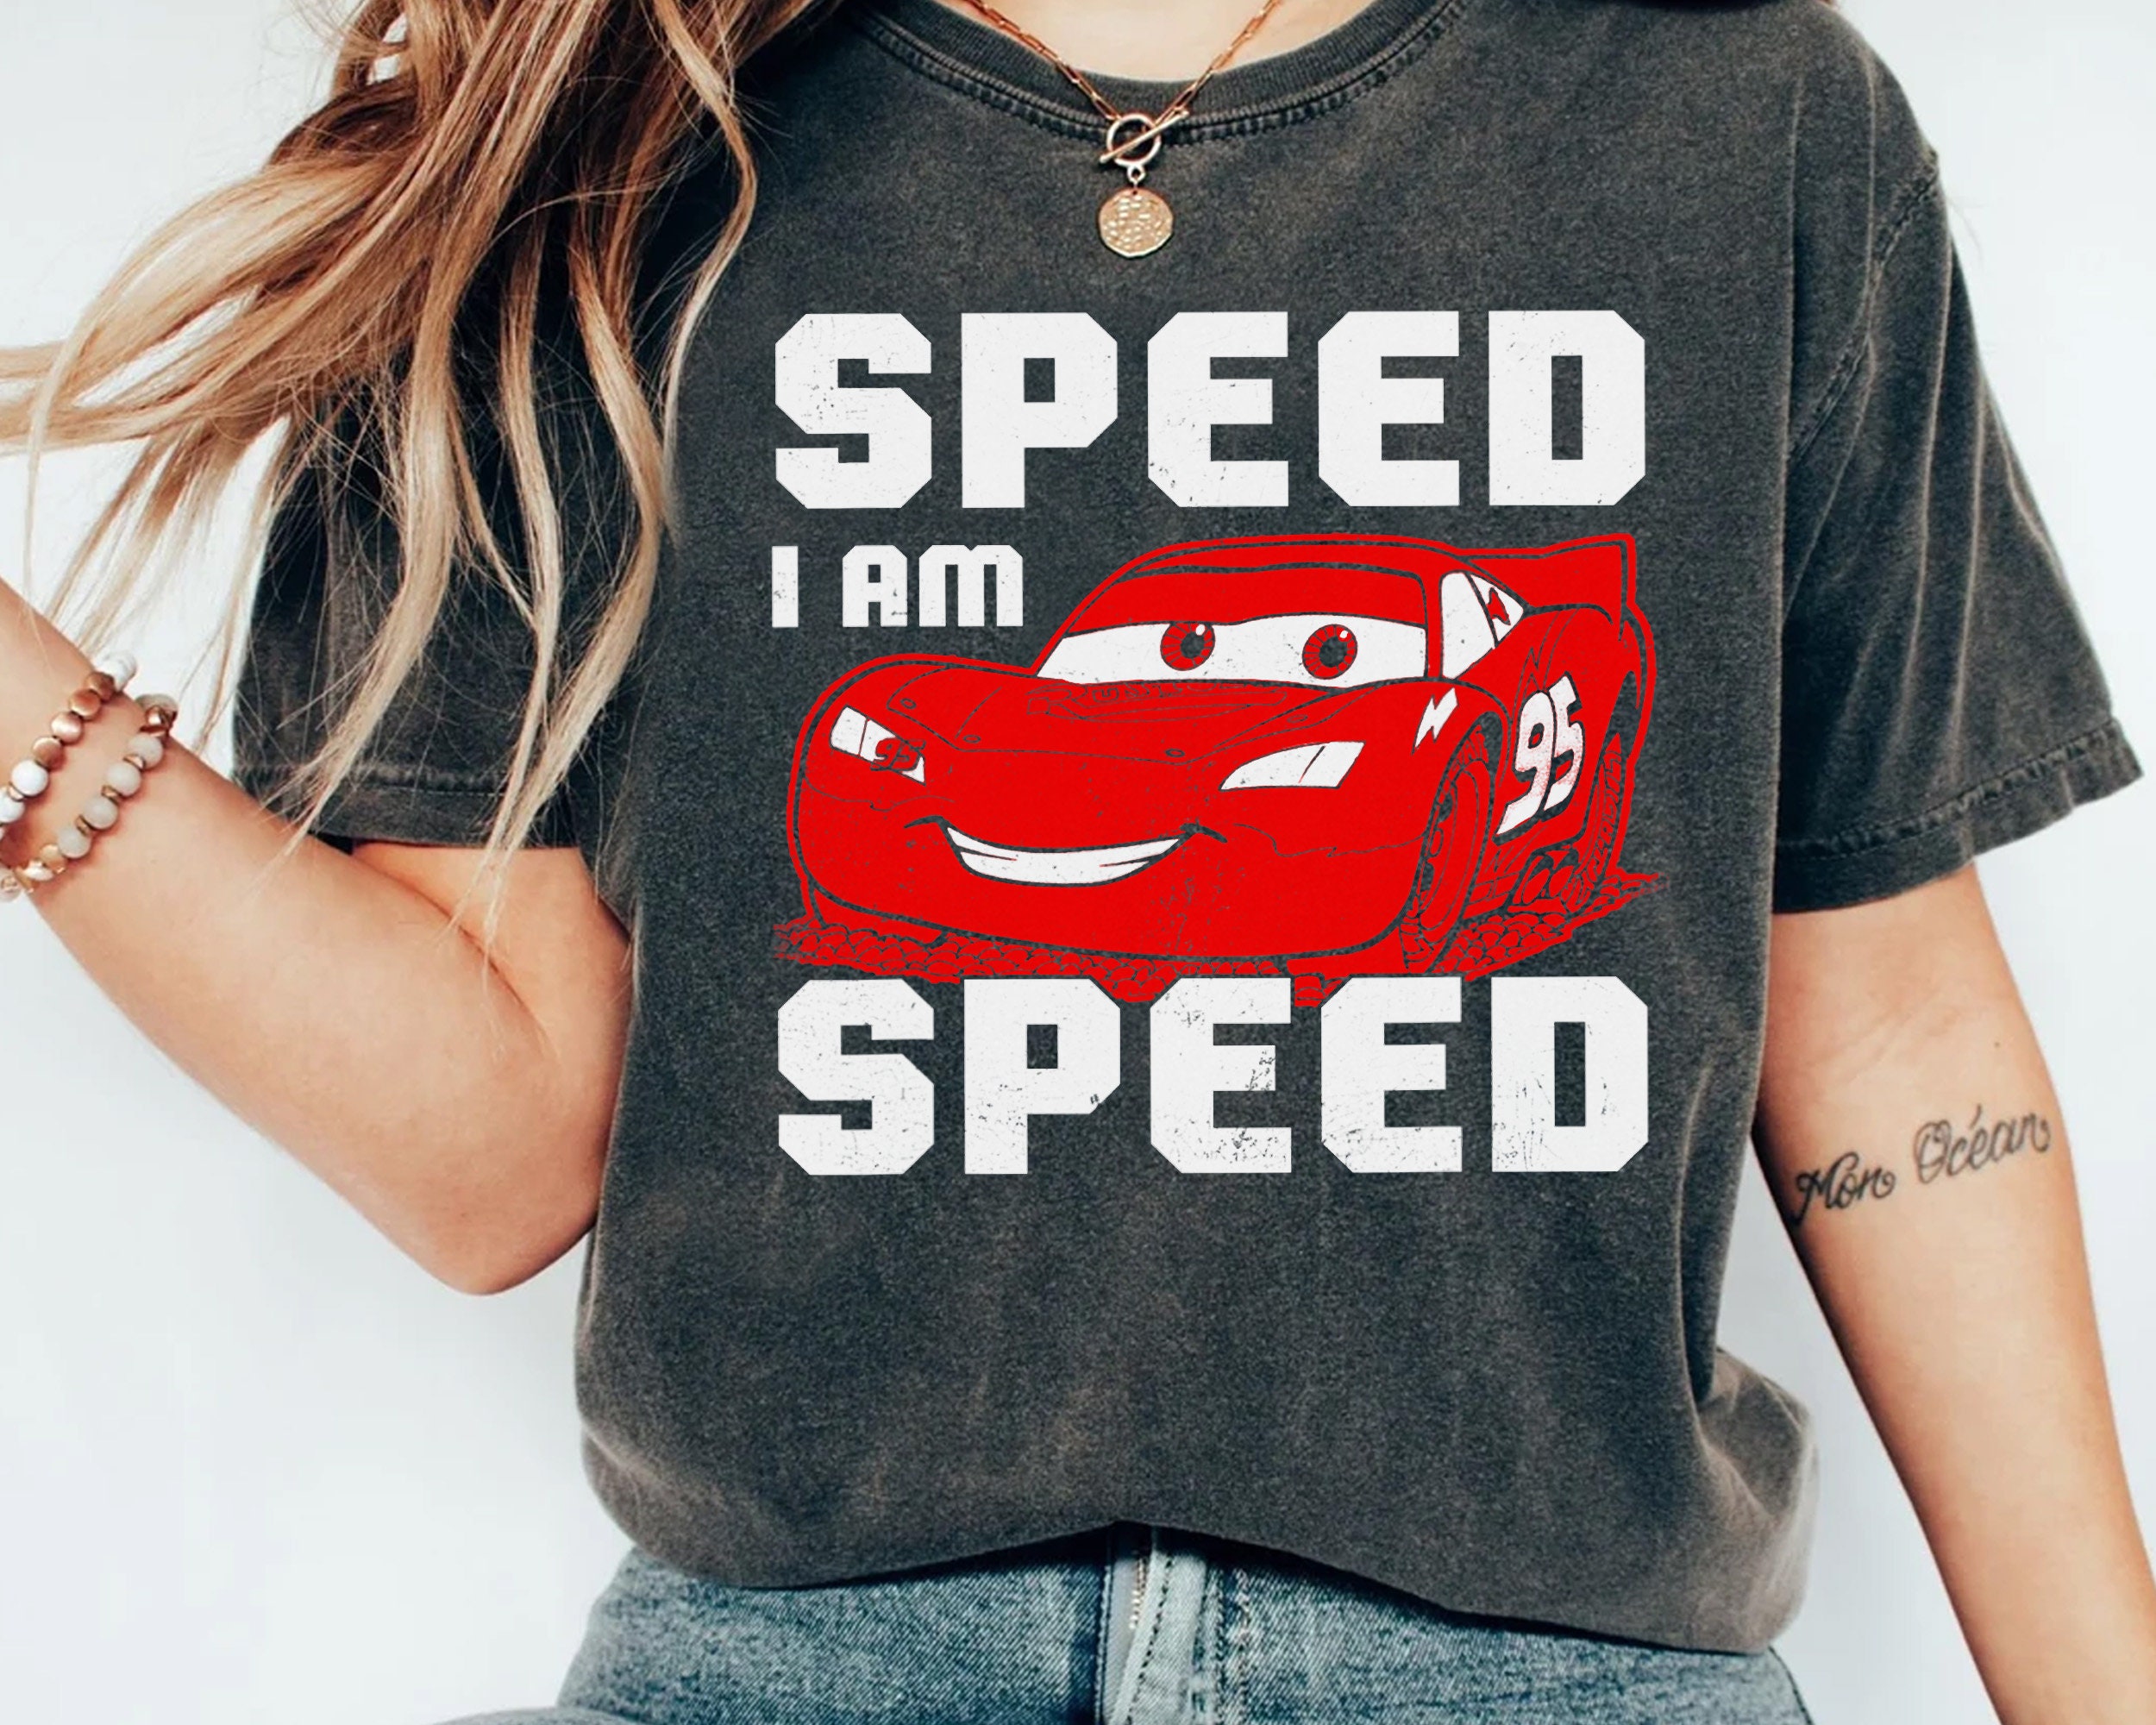 I Am Speed - Etsy UK